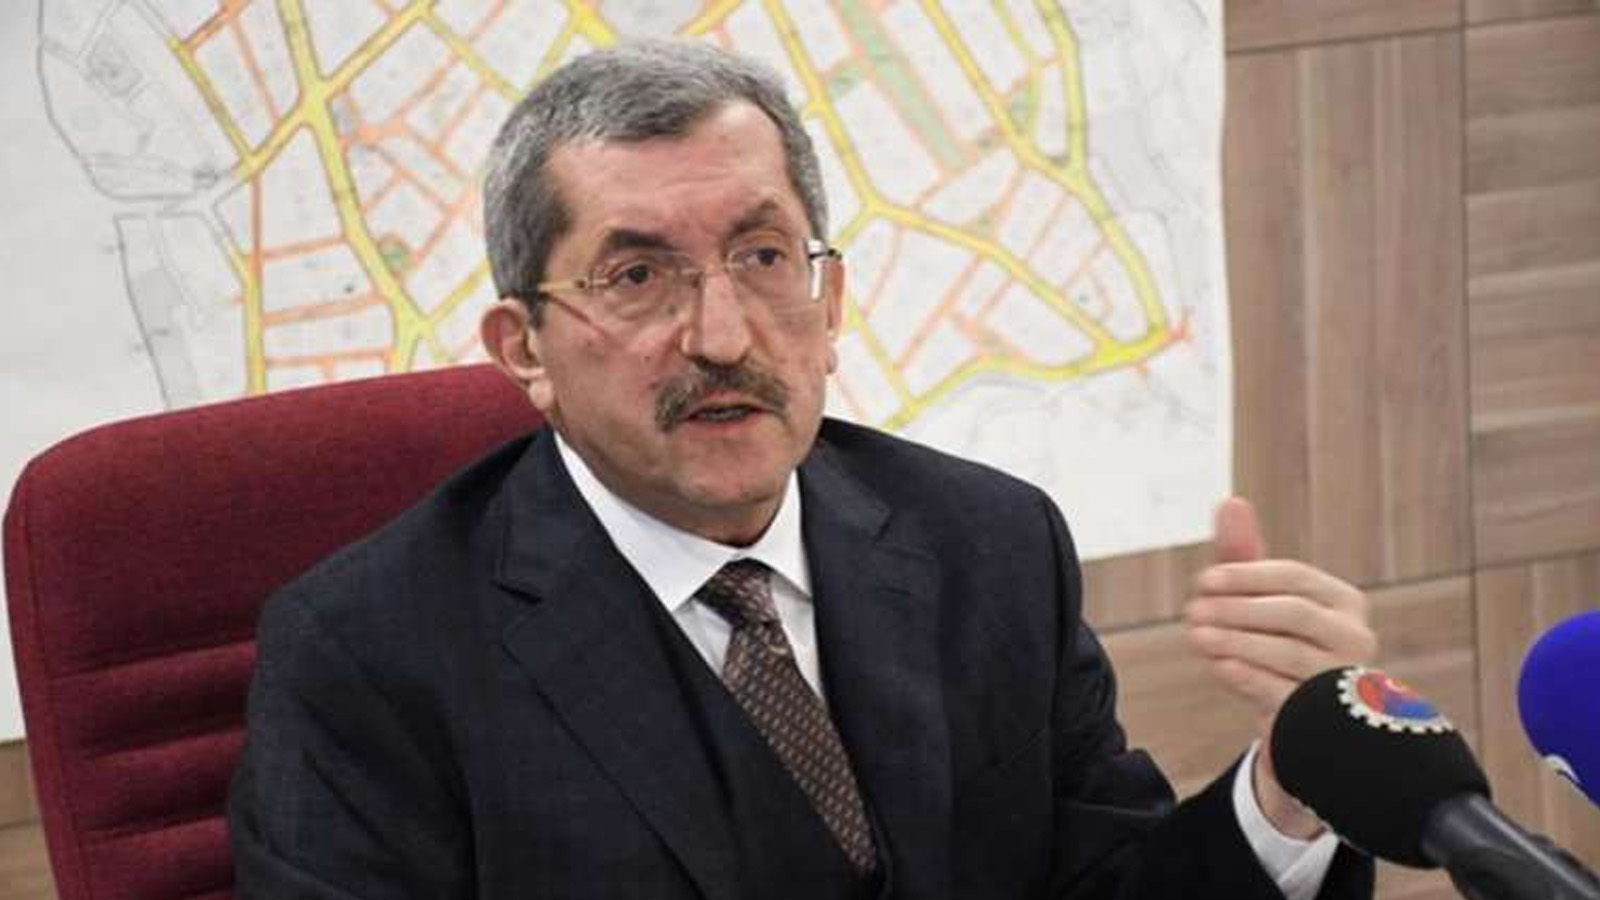 MHP’li Başkan Rafet Vergili, AKP adayı Özkan Çetinkaya’nın FETÖ’cü olduğunu söyledi